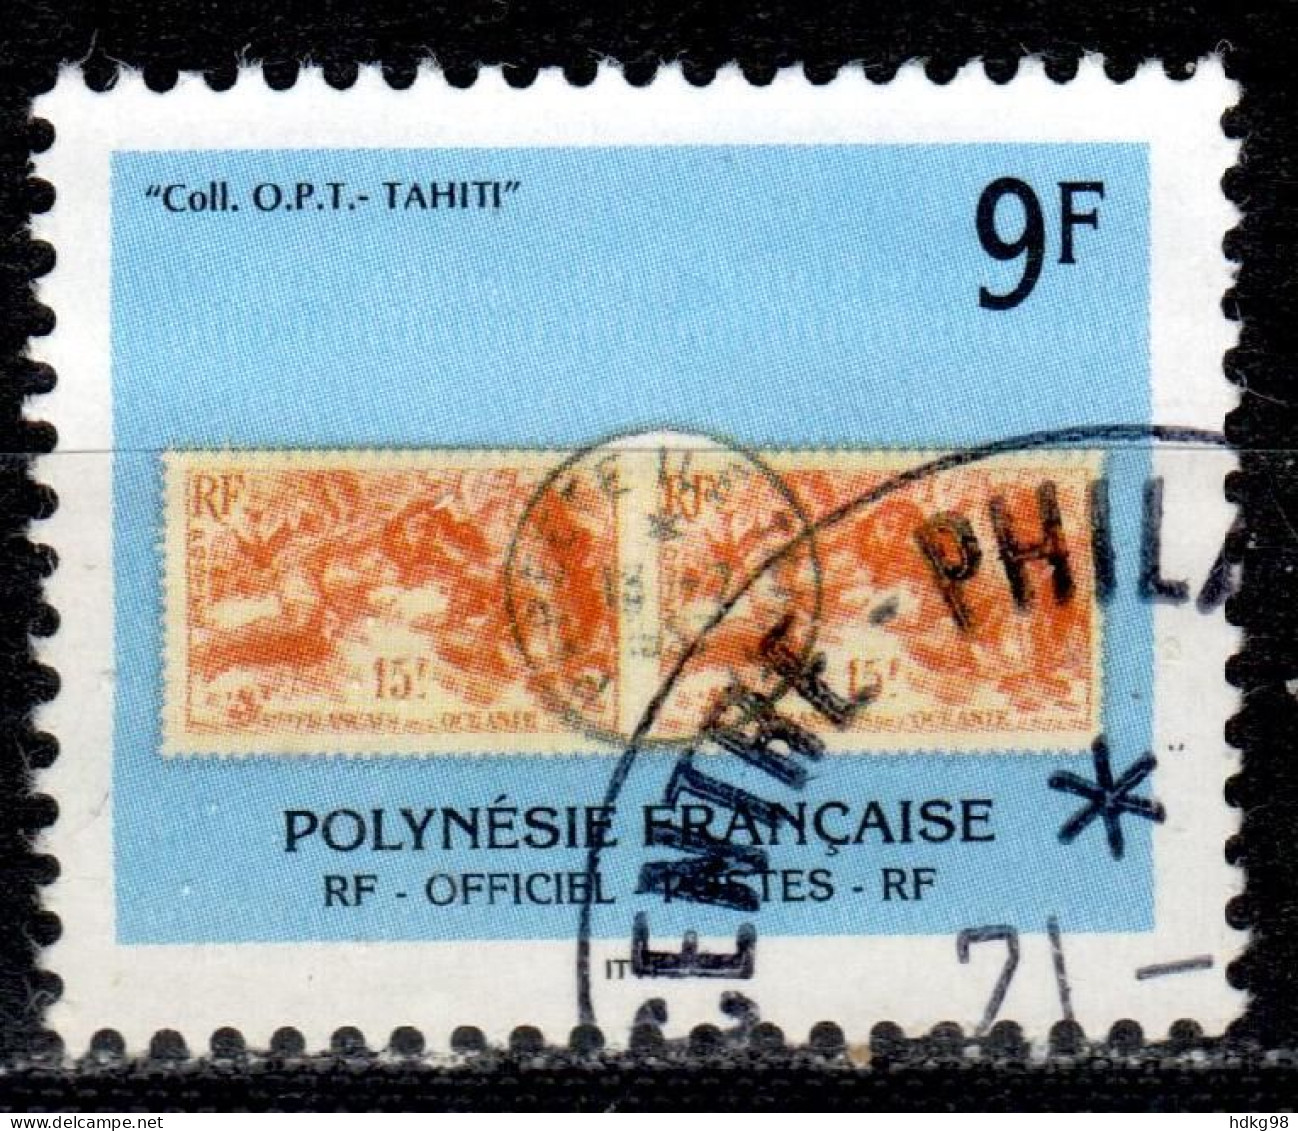 F P+ Polynesien 1997 Mi 27 Briefmarken - Gebraucht